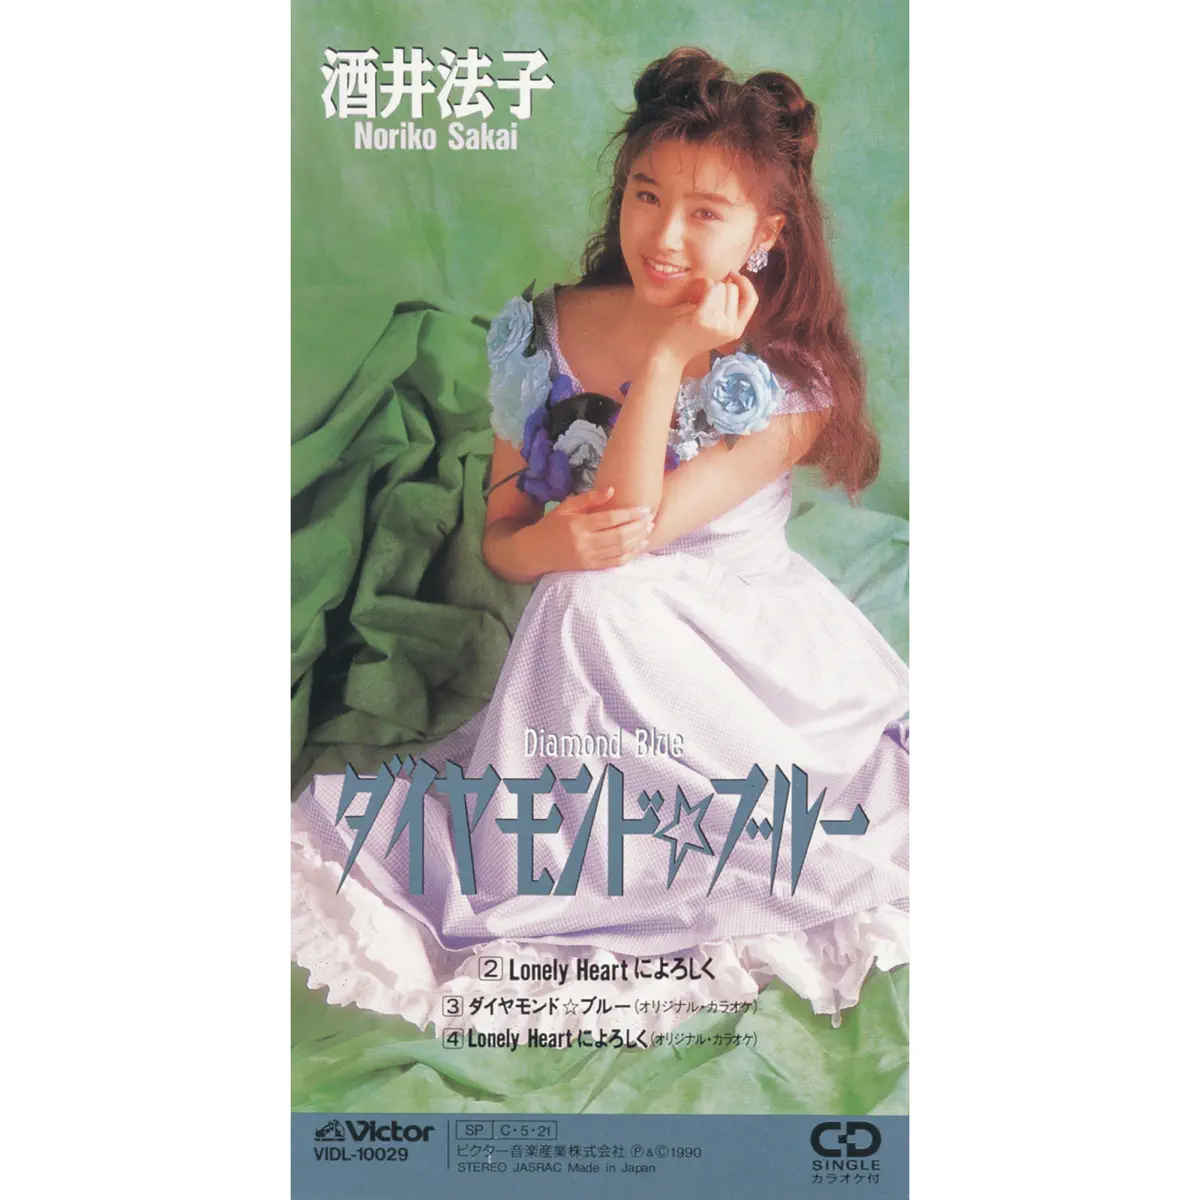 酒井法子 - ダイヤモンド☆ブルー - EP (1990) [iTunes Plus AAC M4A]-新房子